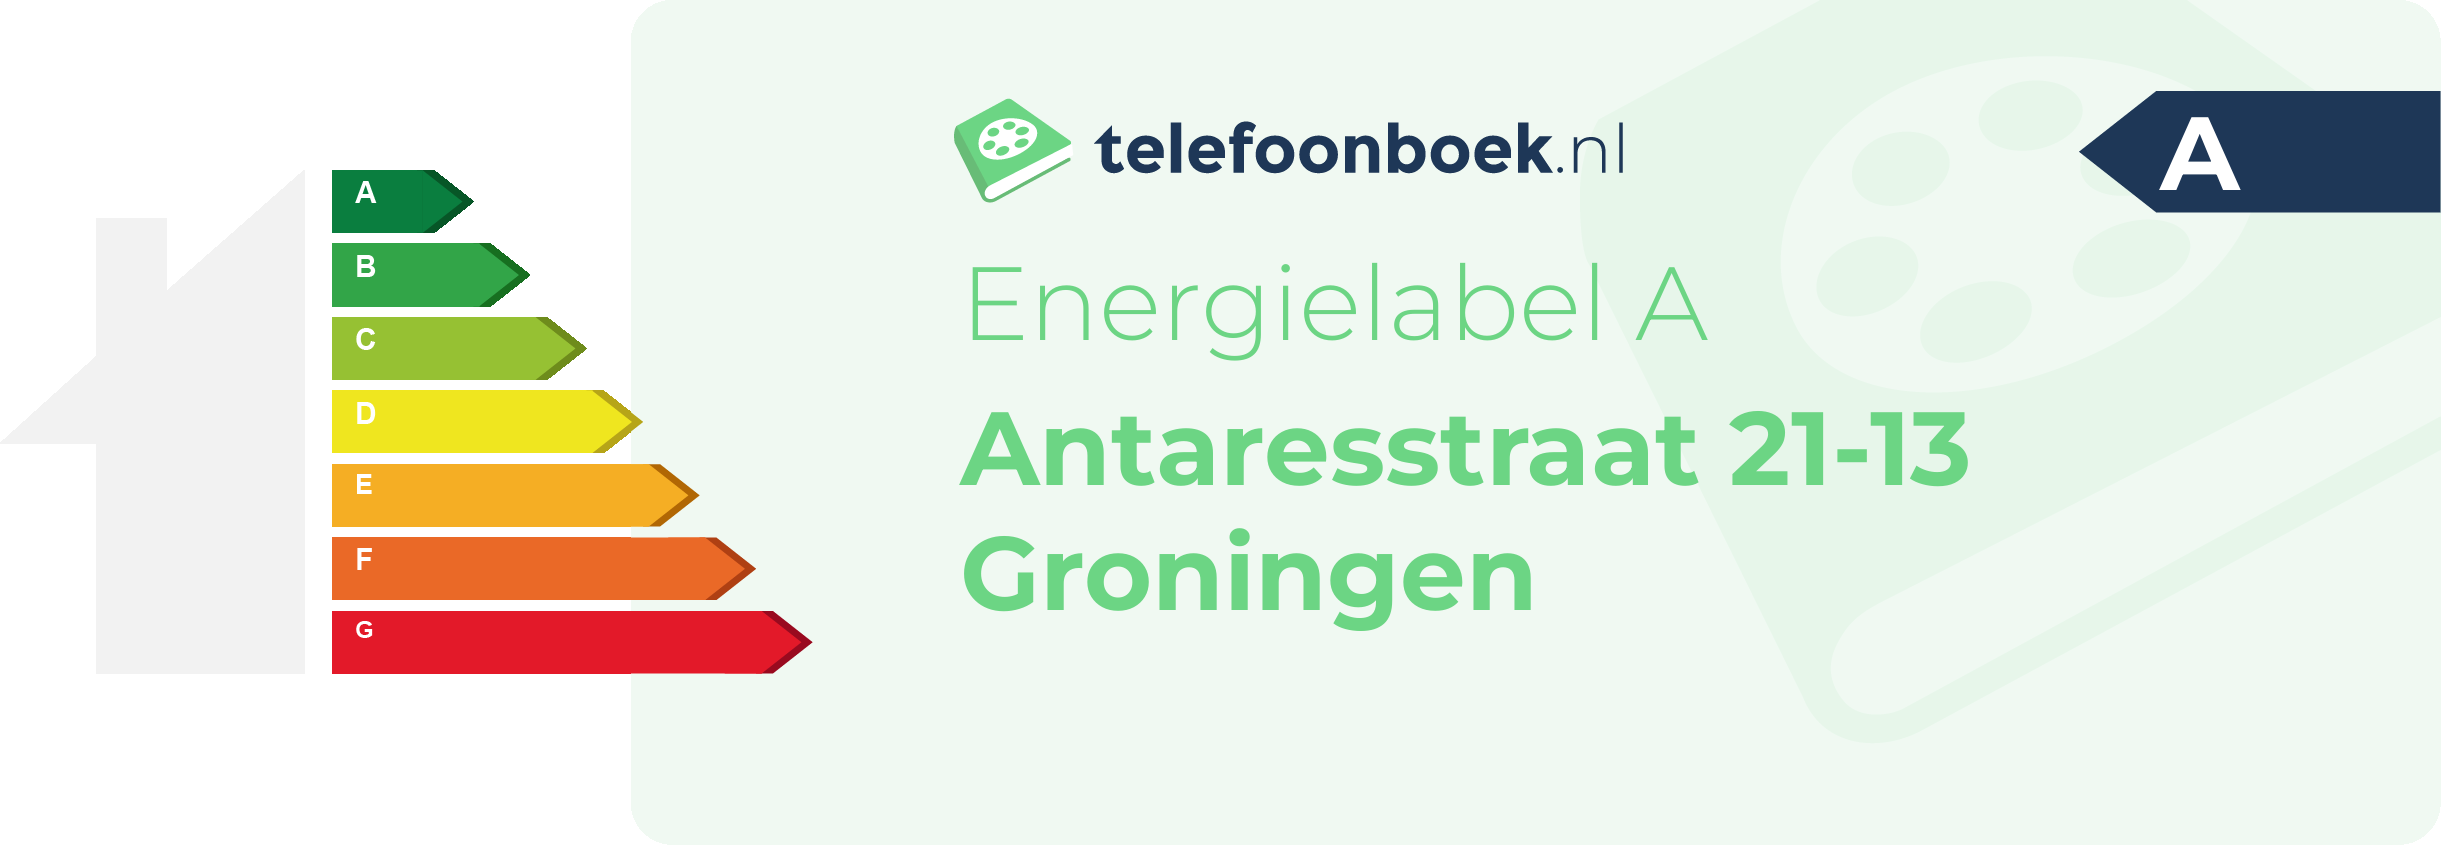 Energielabel Antaresstraat 21-13 Groningen